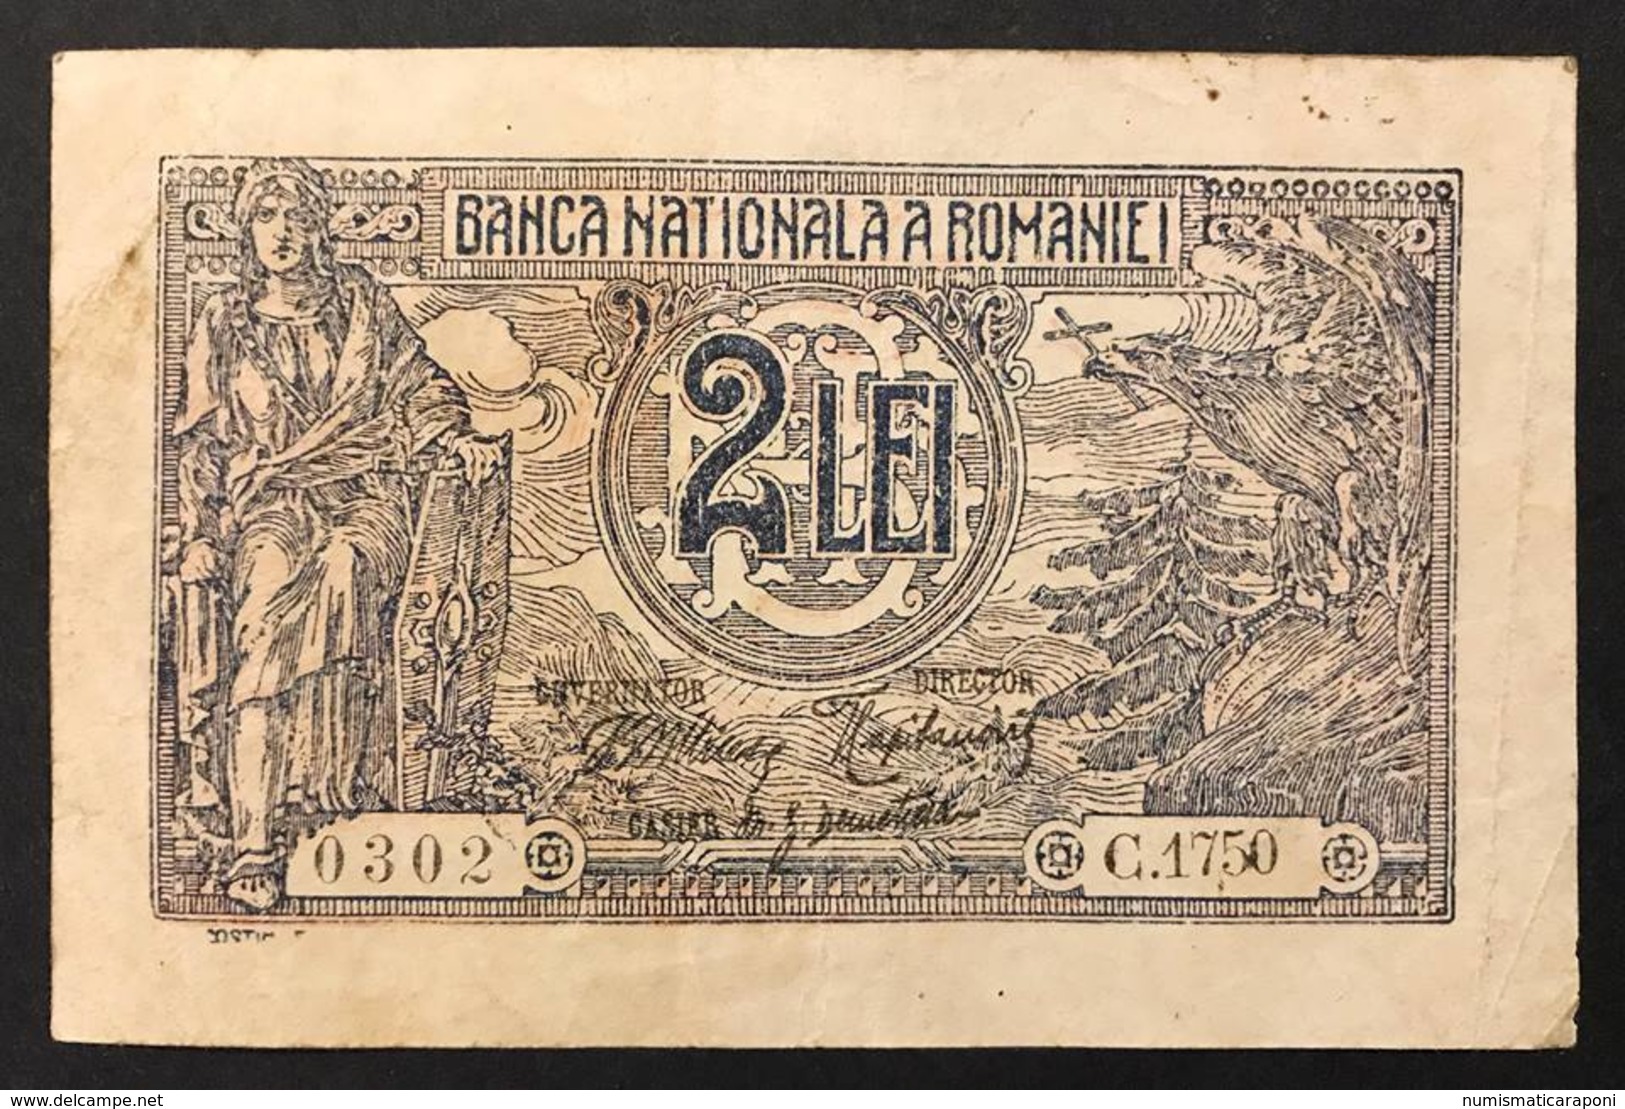 ROMANIA 1915 2 LE1 LOTTO 171 - Romania